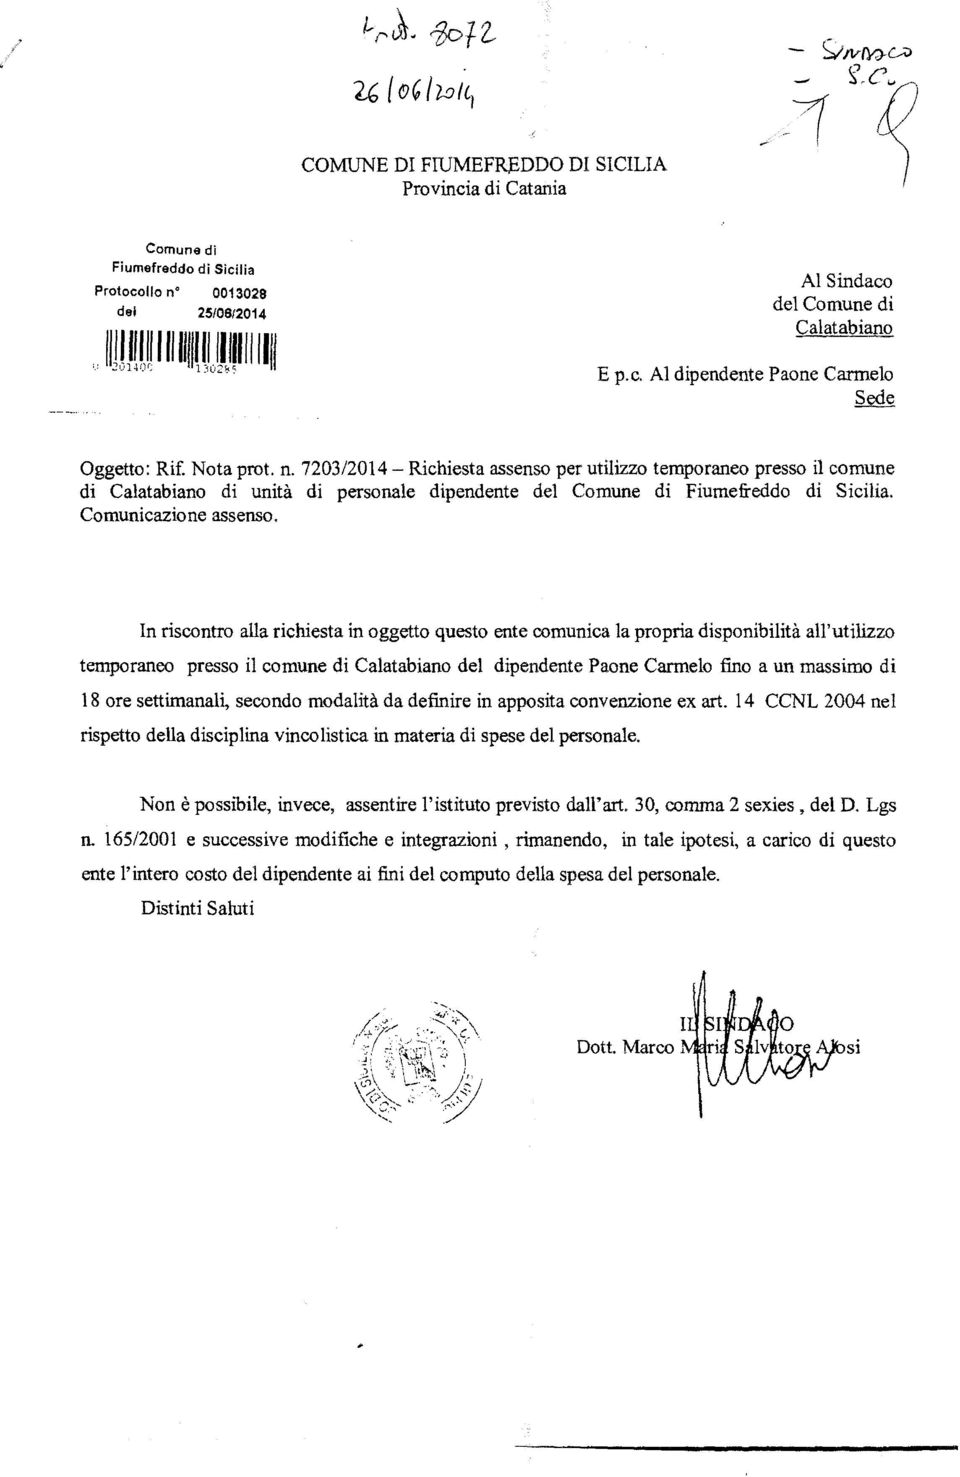 7203/2014 - Richiesta assenso per utilìzzo temporaneo presso il comune di Calatabiano di unità di personale dipendente del Comune di Fiumefreddo di Sicilia. Comunicazione assenso.